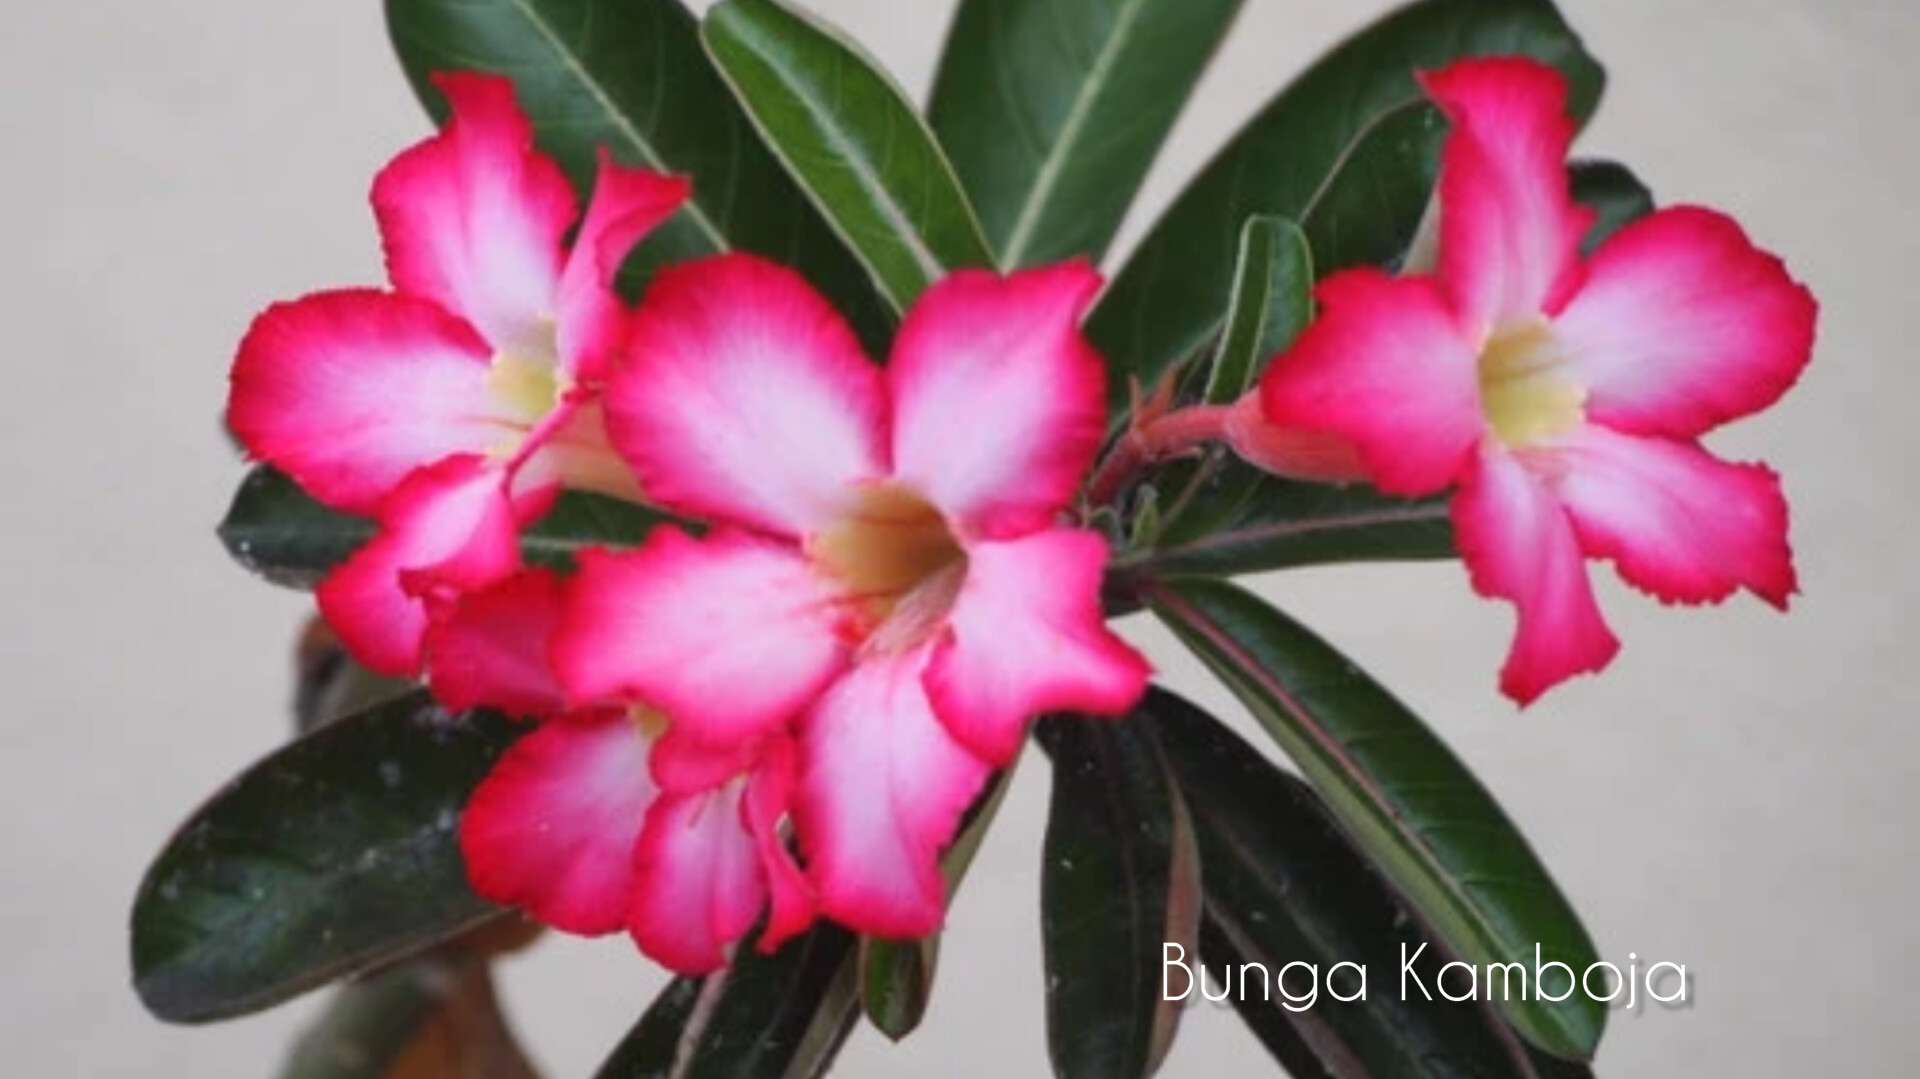 6 Manfaat Bunga Kamboja untuk Kesehatan dan Kecantikan, Kaum Hawa Harus Coba!